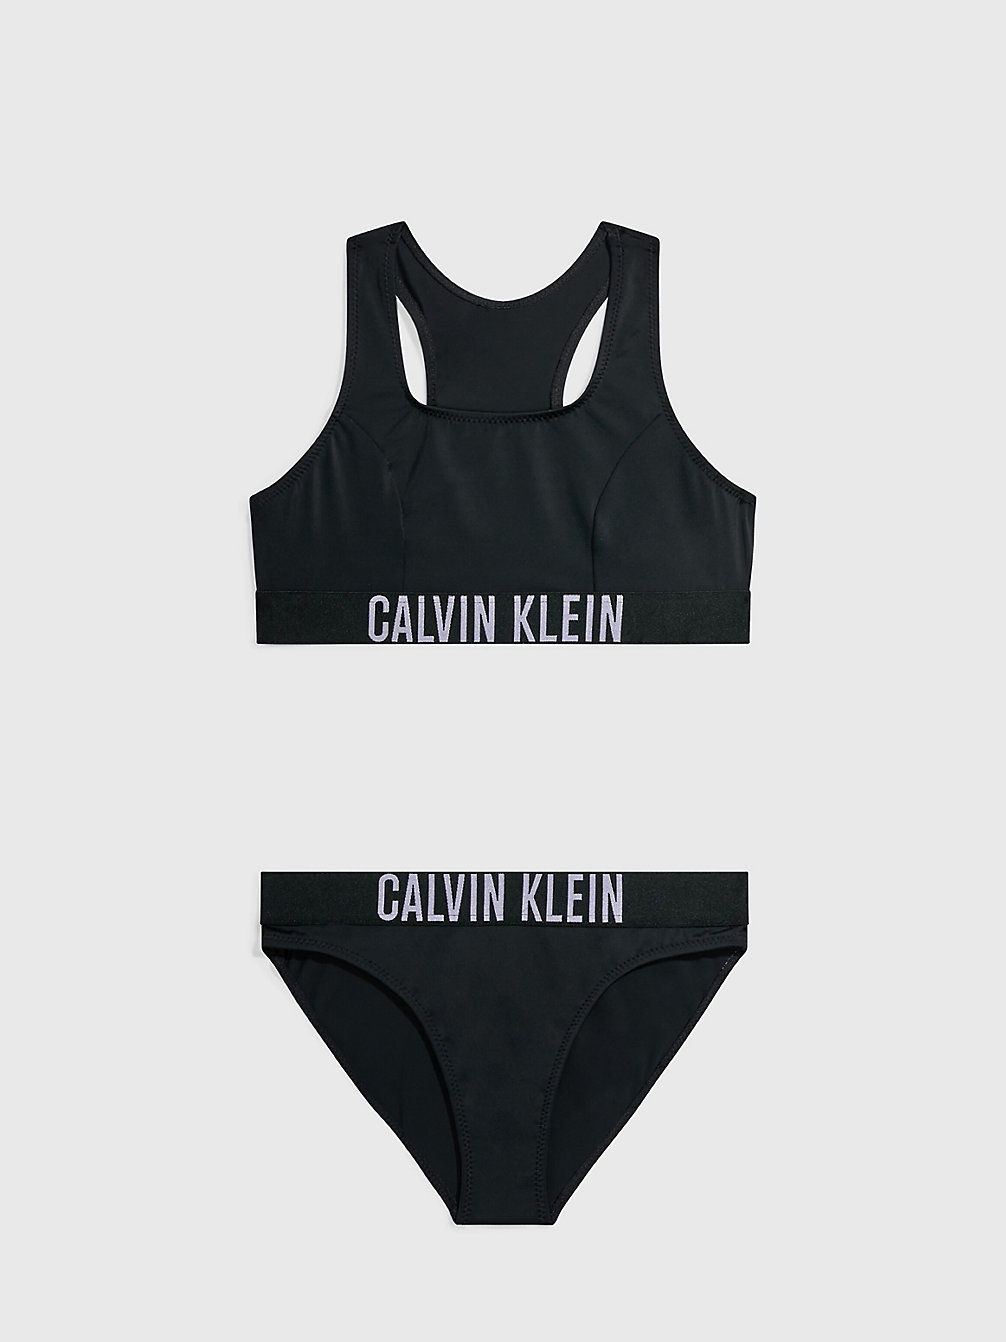 PVH BLACK > Dziewczęcy Zestaw Bikini Z Braletką- Intense Power > undefined Dziewczynki - Calvin Klein